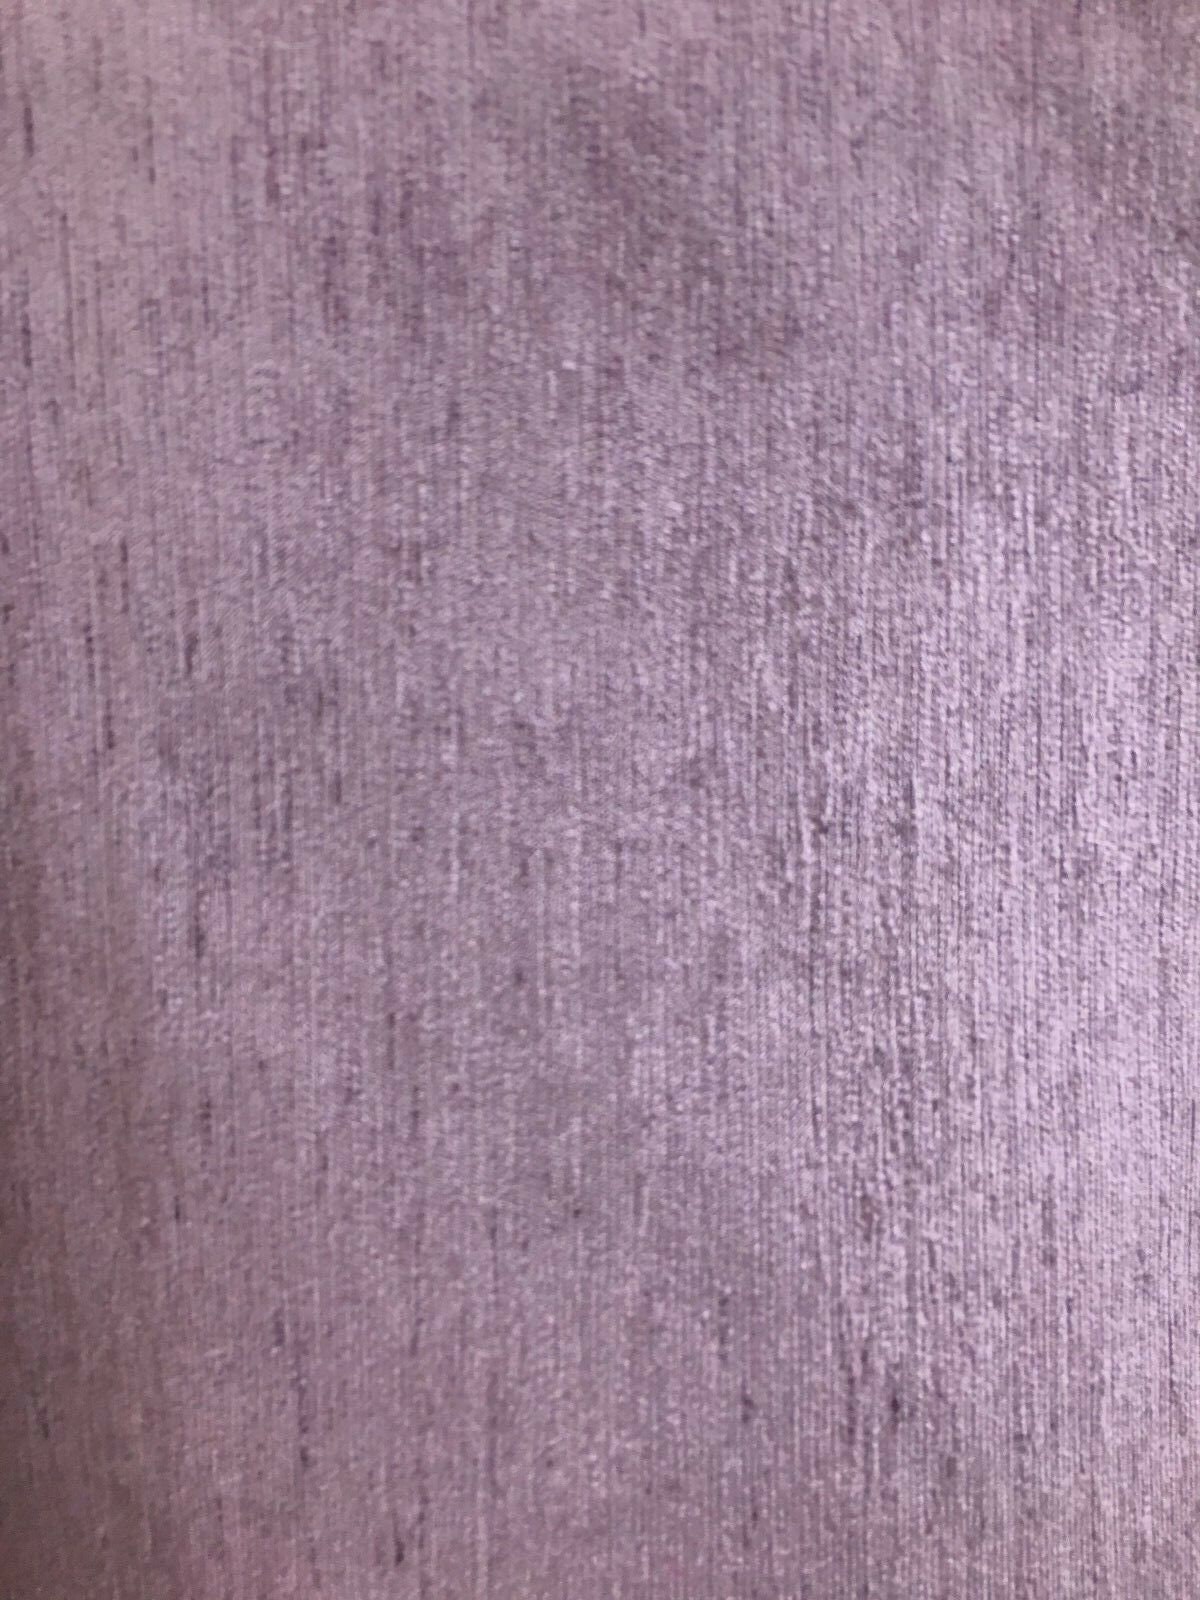 LAVENDER Solid Chenille Velvet Upholstery Drapery Fabric 54 - Etsy